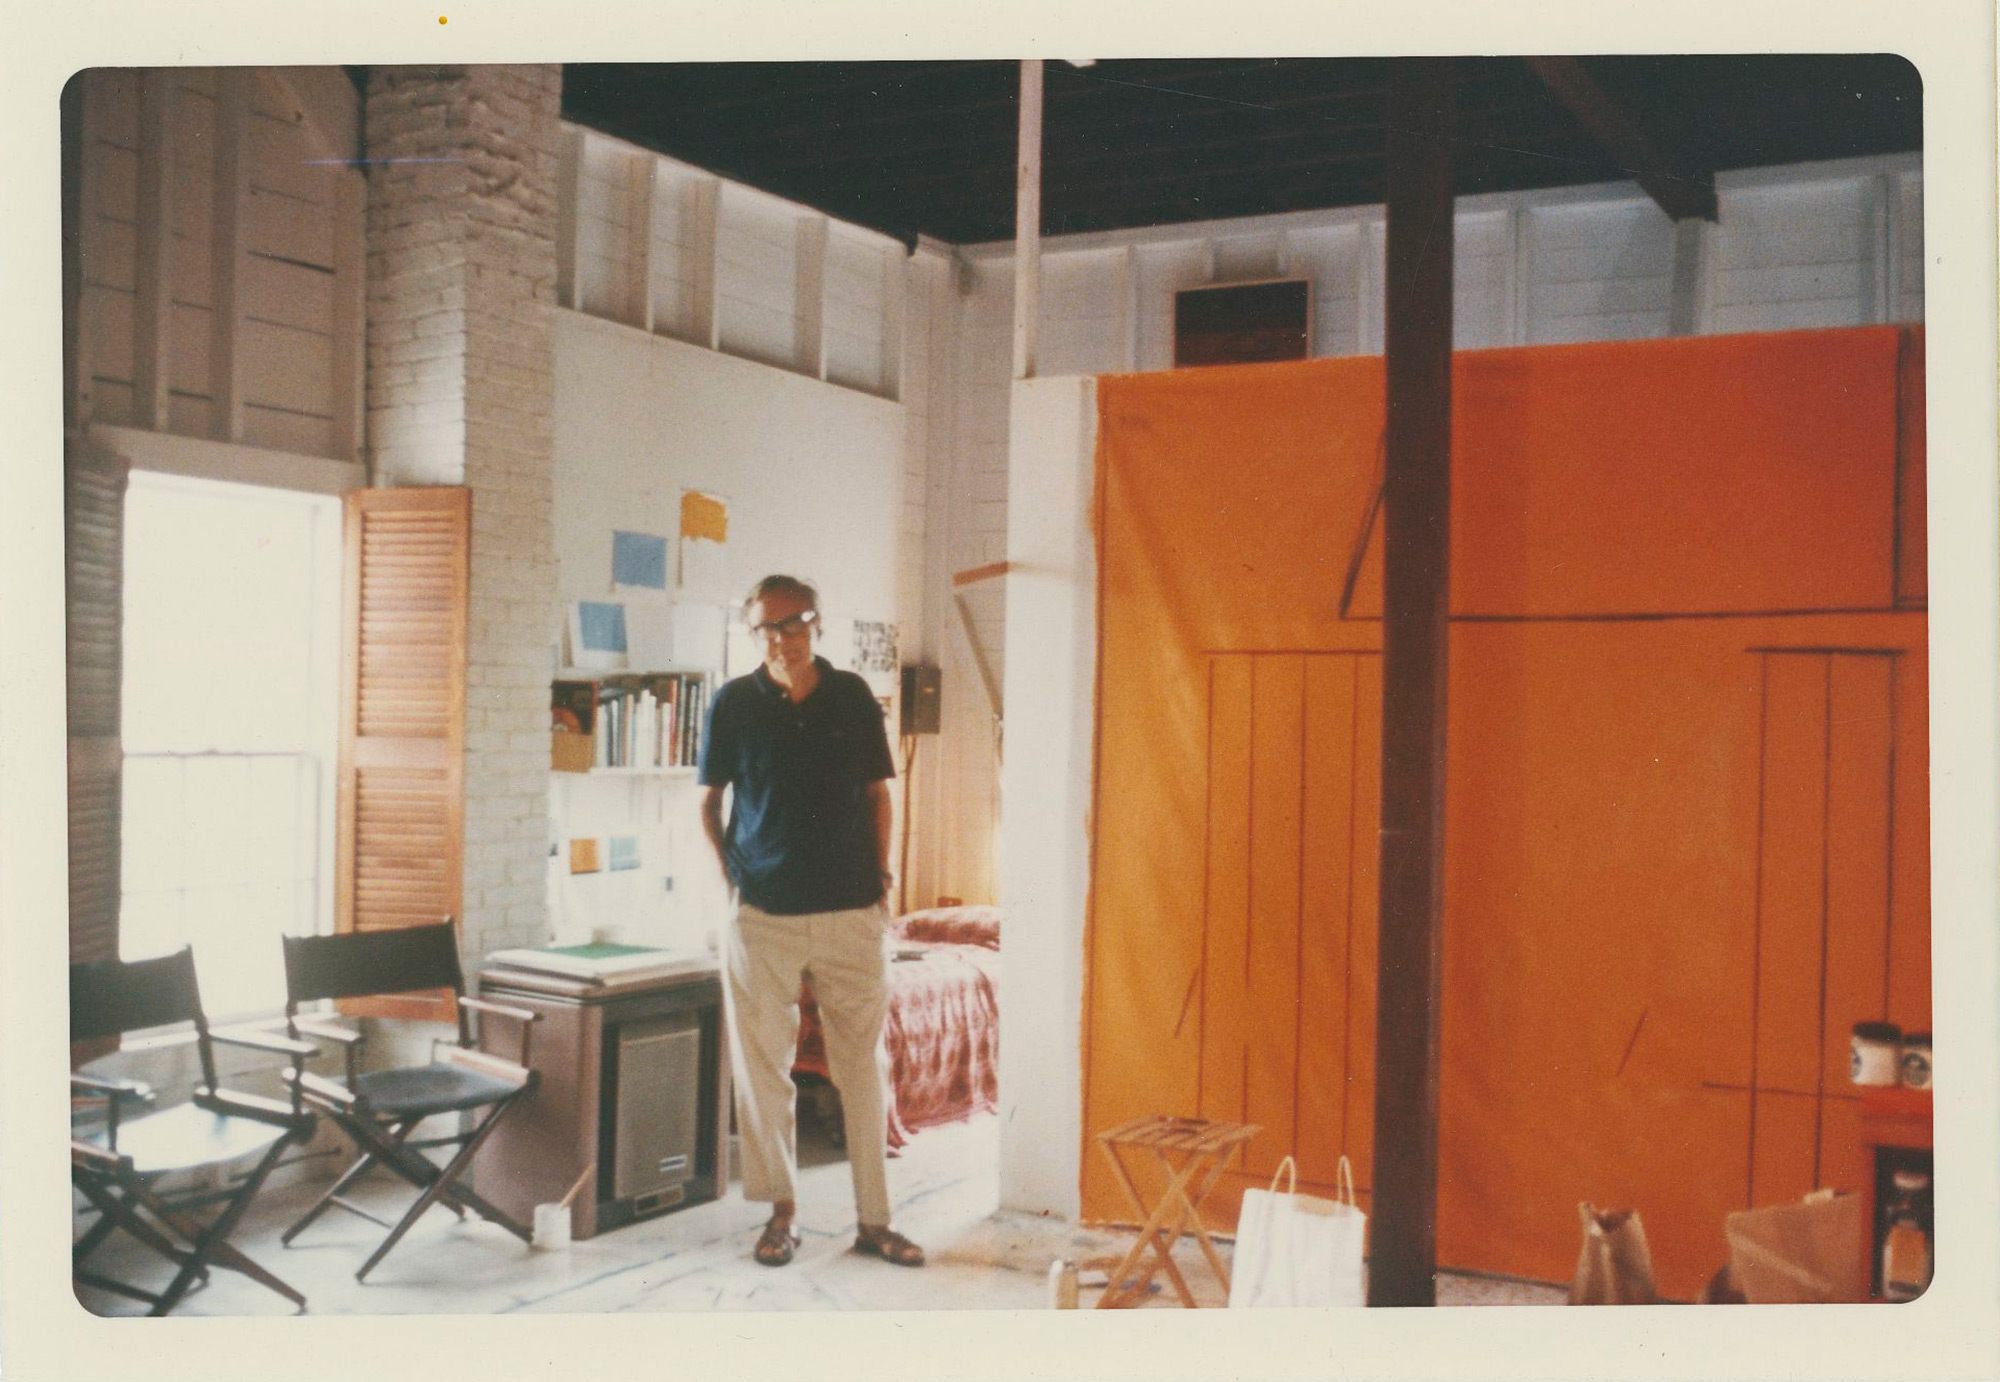 Robert Motherwell standing in his studio